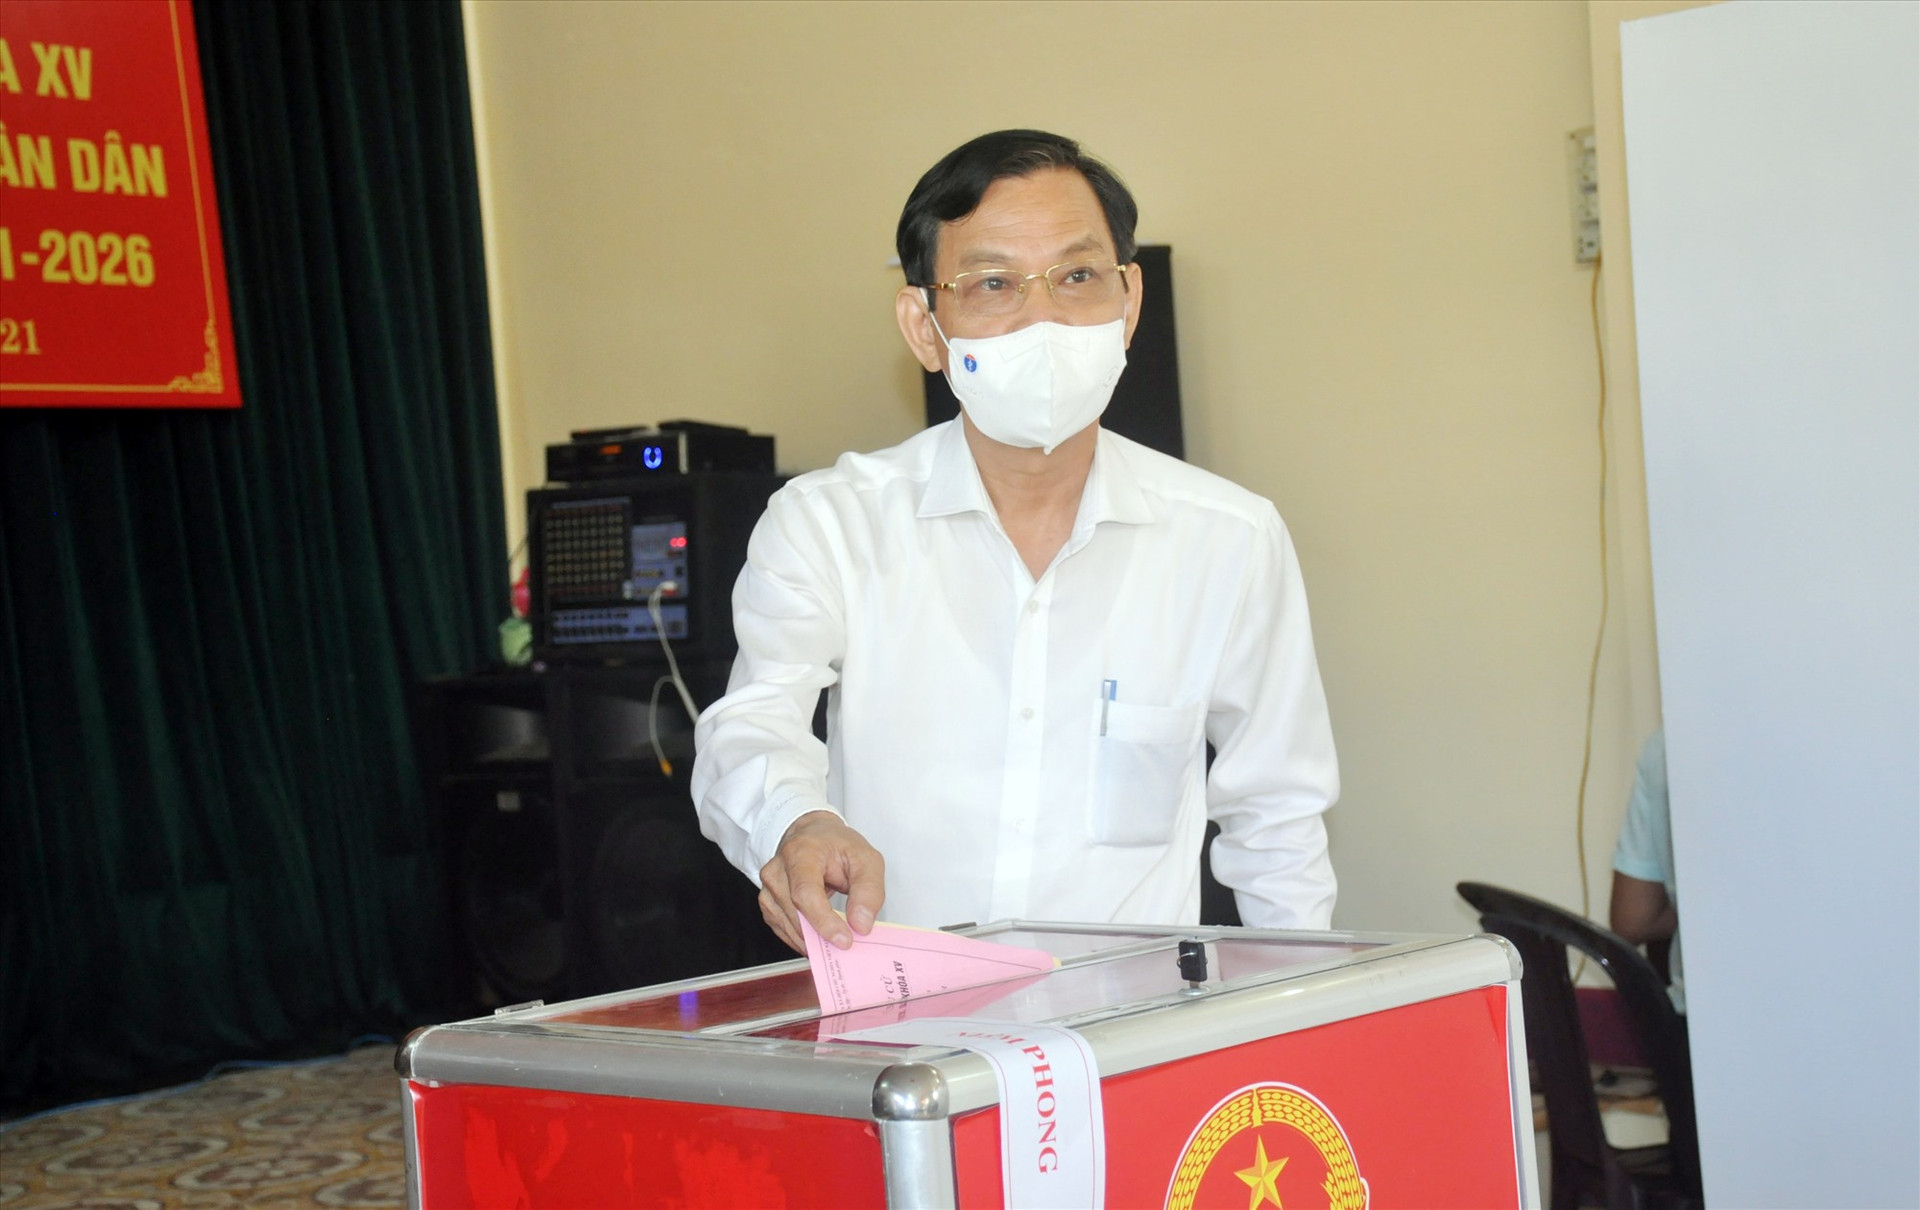 Đồng chí Nguyễn Chín - đại diện lãnh đạo tỉnh bỏ lá phiếu đầu tiên.